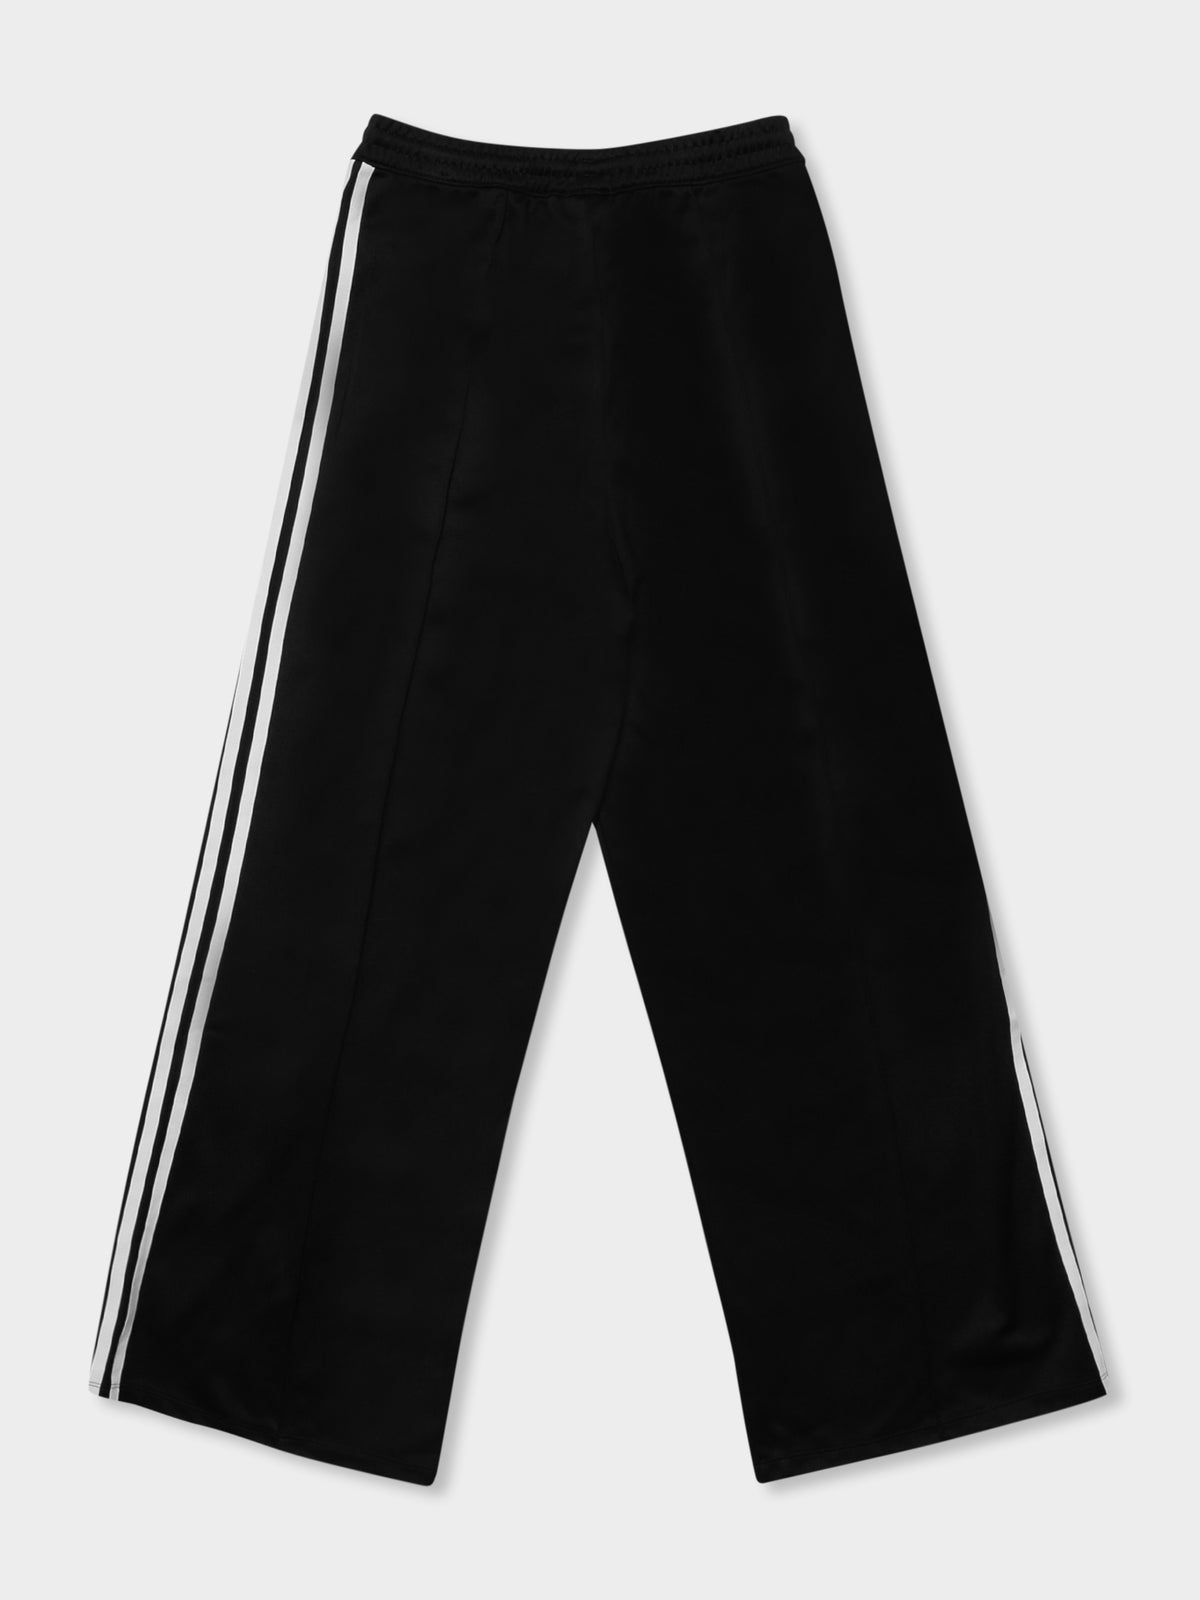 Adicolour Classics Track Pants in Black